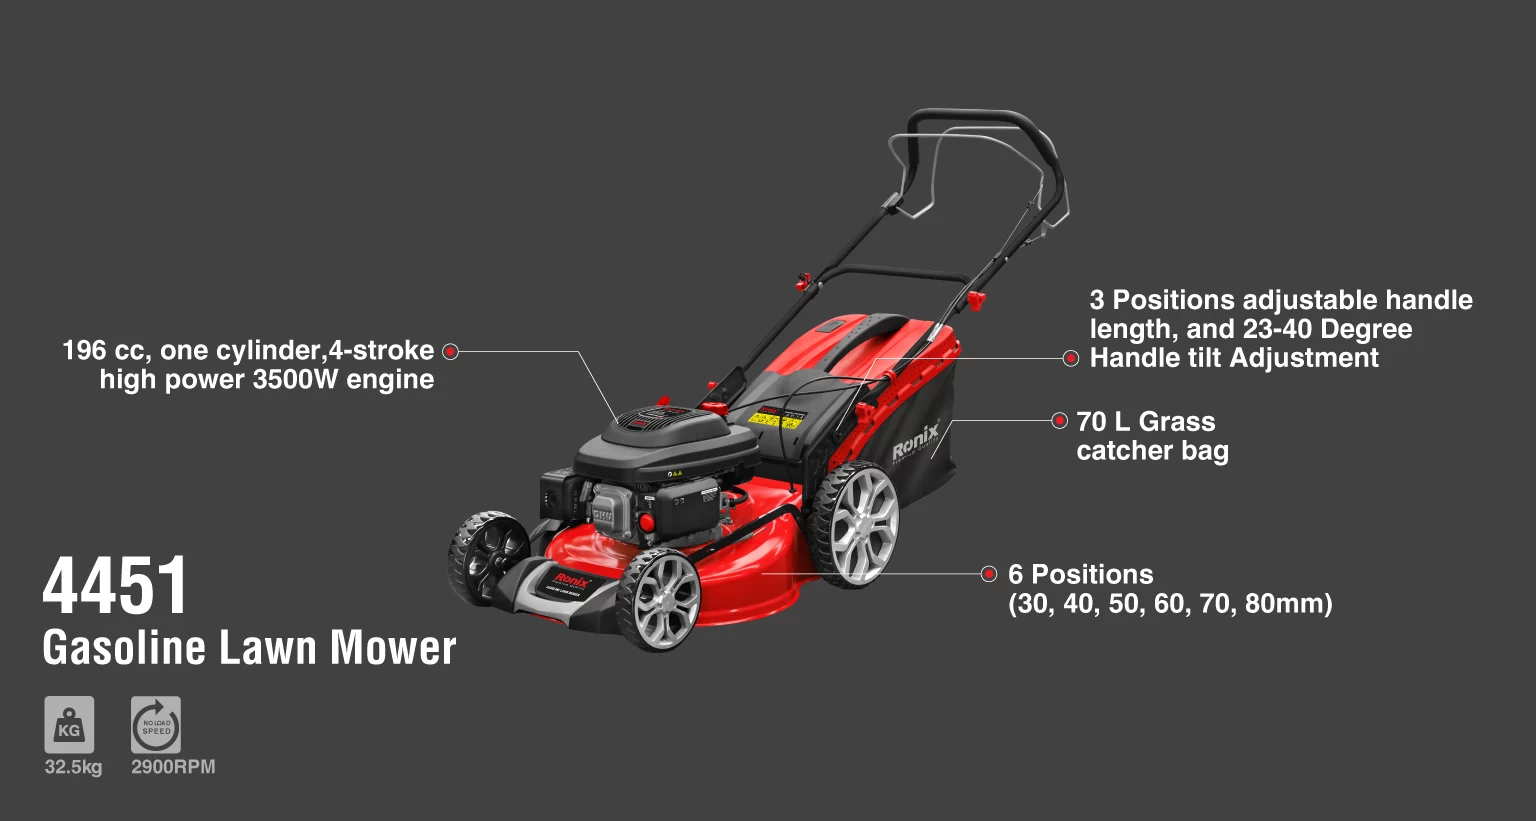 Gasoline Lawn mower 6.5HP-510mm_details